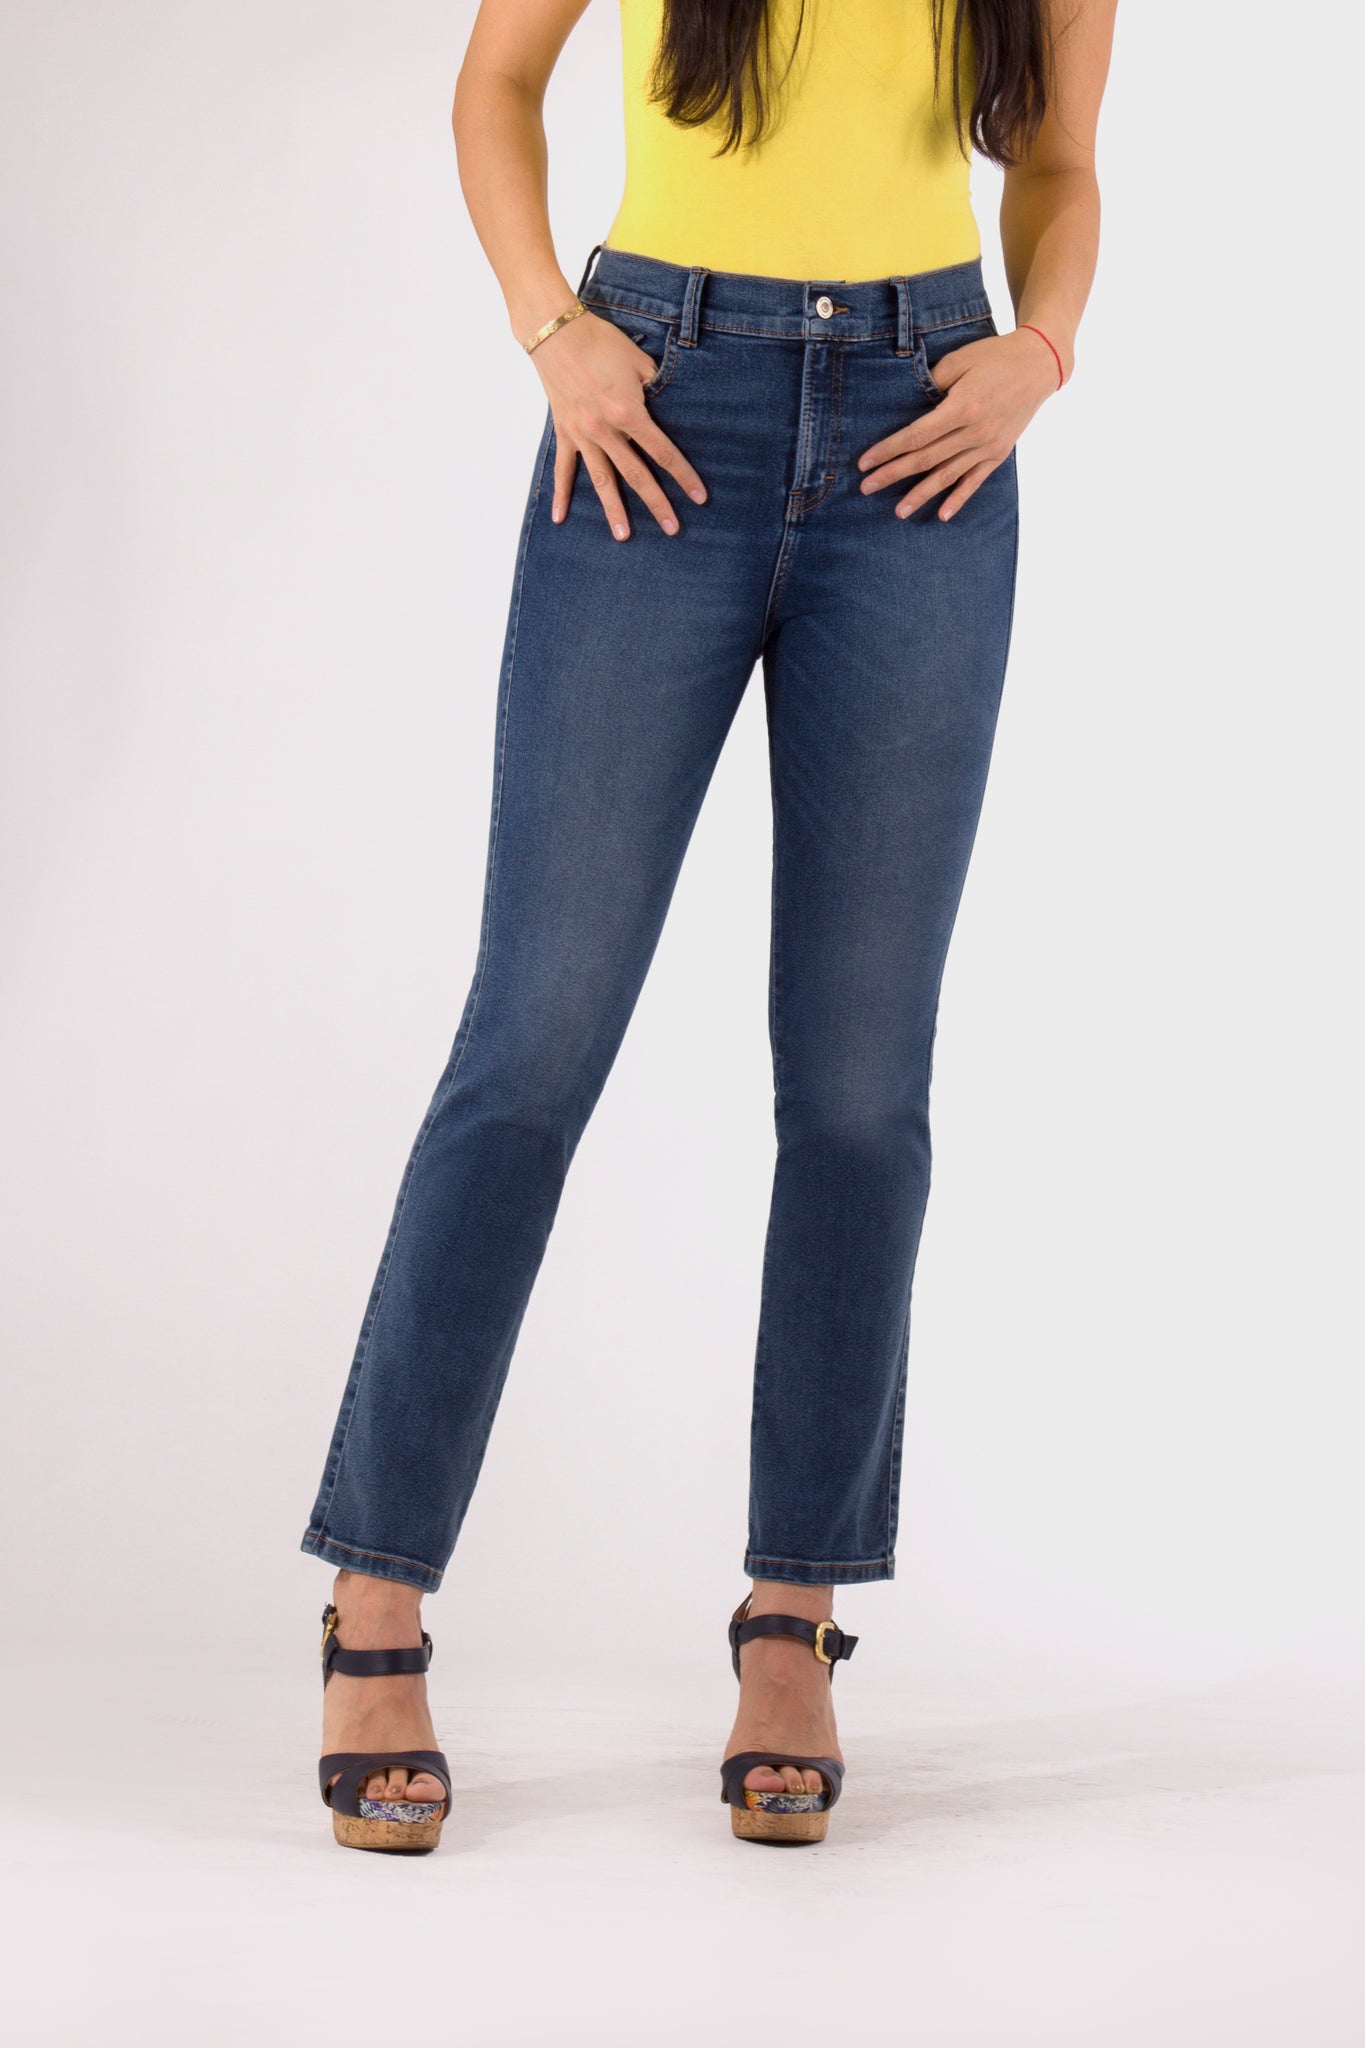 OHPOMP!® Cintura Alta Straight Jeans Azul Oscuro OP1683